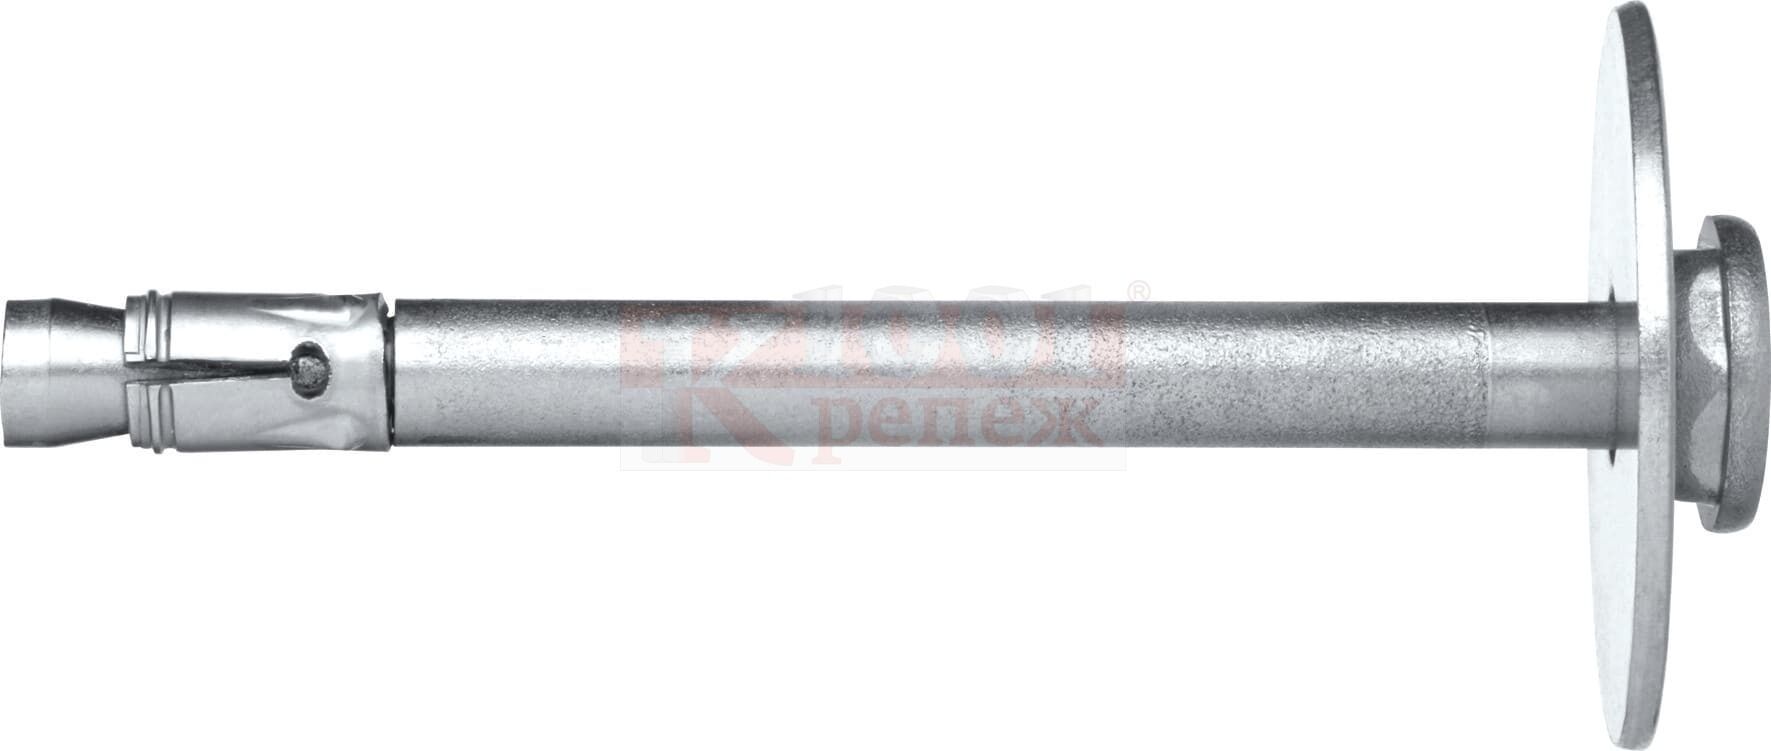 HFB-R A4 Анкер-гвоздь HILTI для крепления огнезащитных плит, 6x65/35/30/25 мм